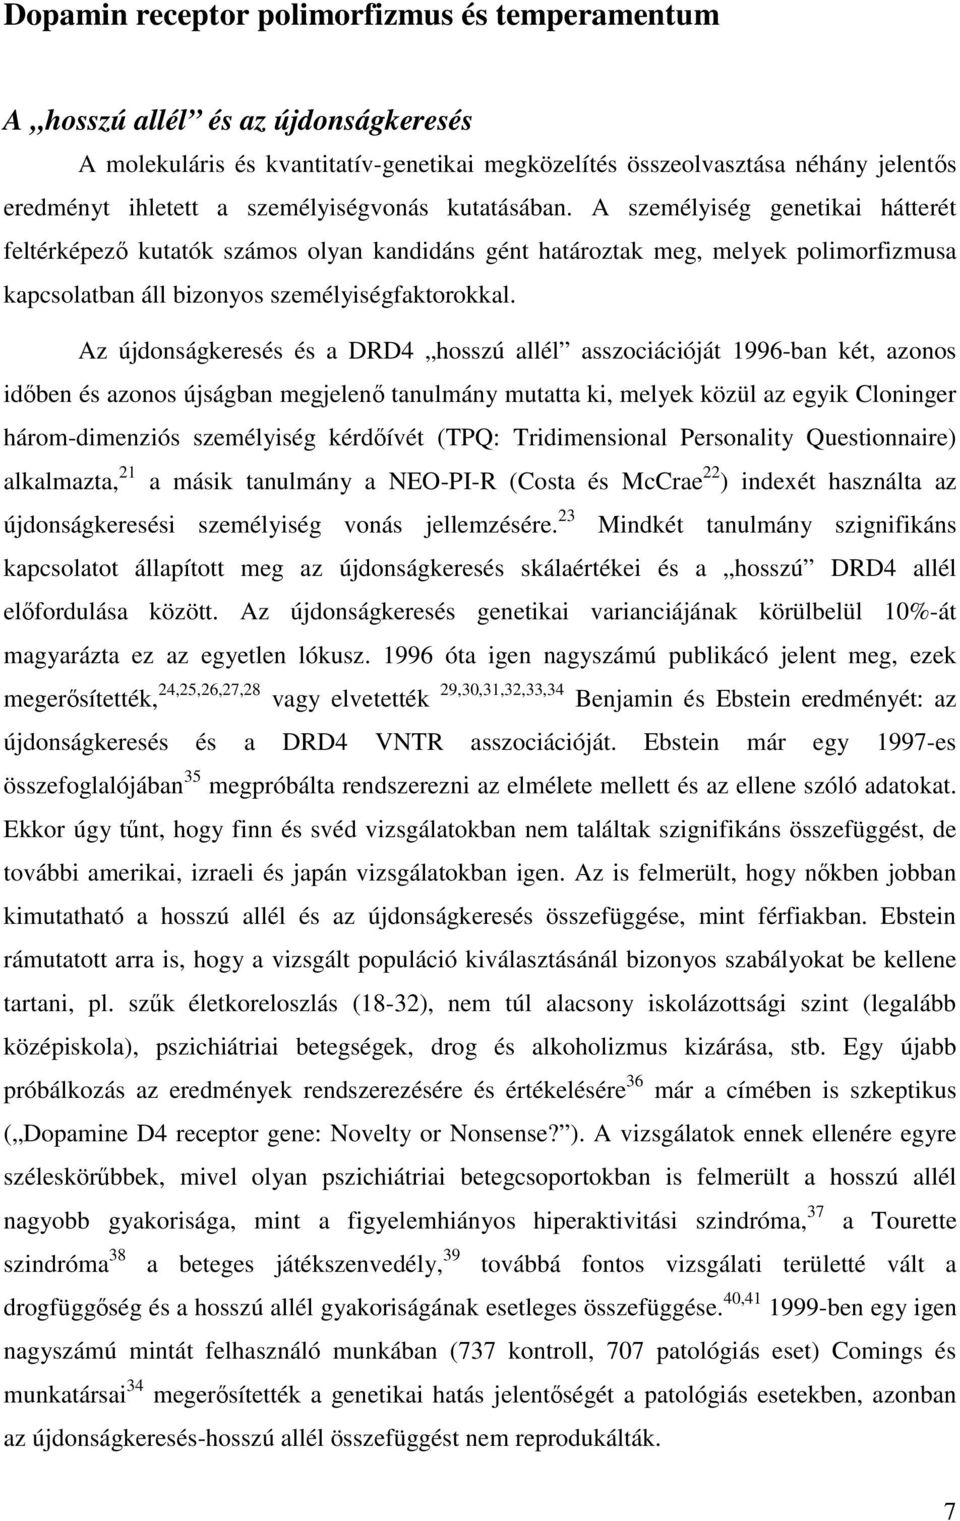 Az újdonságkeresés és a DRD4 hosszú allél asszociációját 1996-ban két, azonos időben és azonos újságban megjelenő tanulmány mutatta ki, melyek közül az egyik Cloninger három-dimenziós személyiség